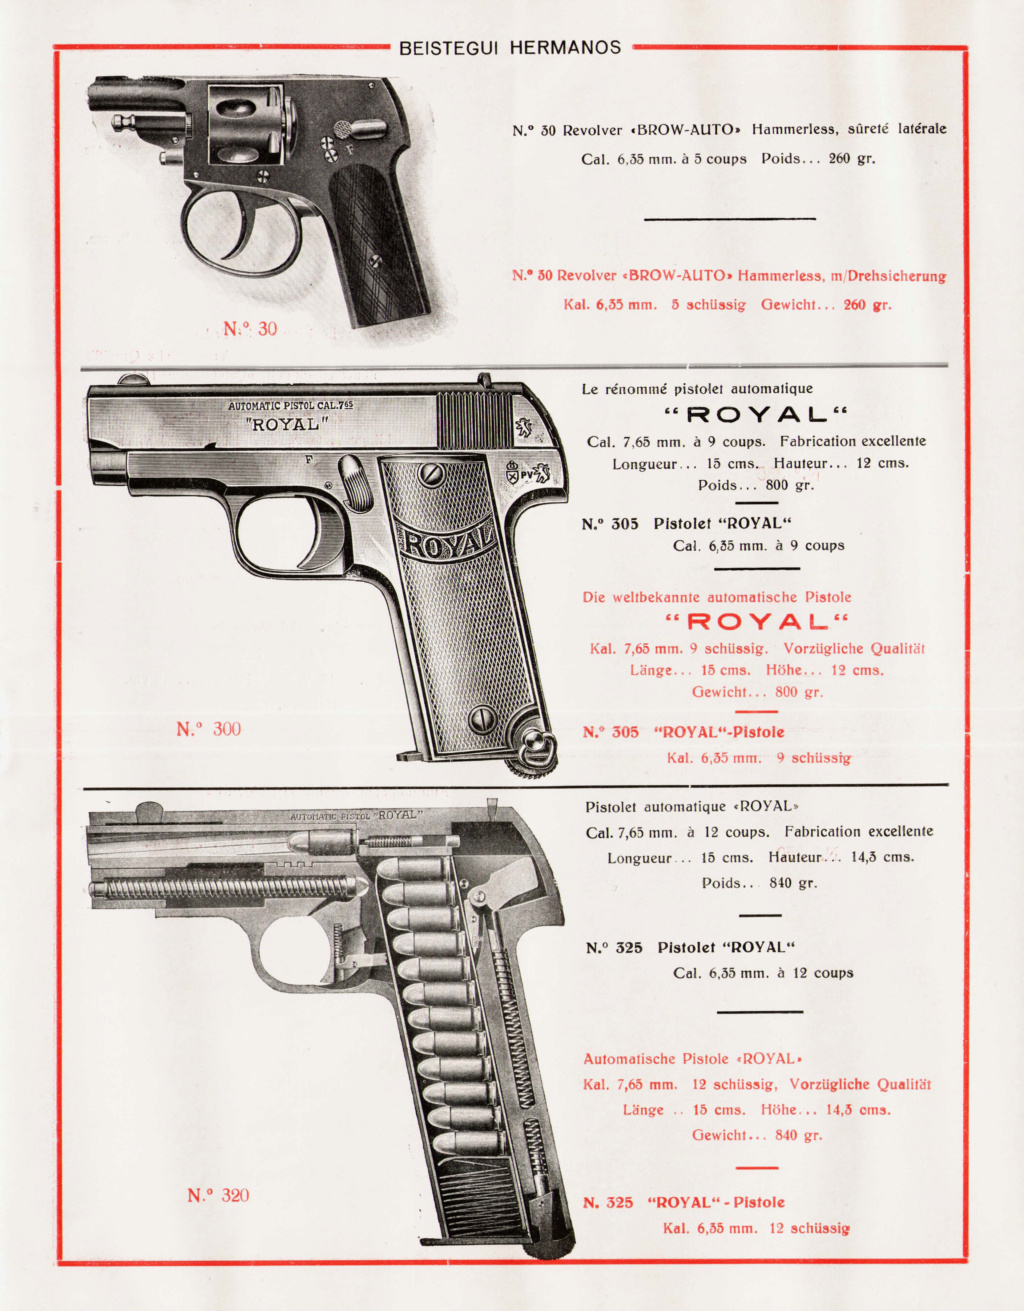 Les revolvers "92" espagnol - Page 3 Bh211